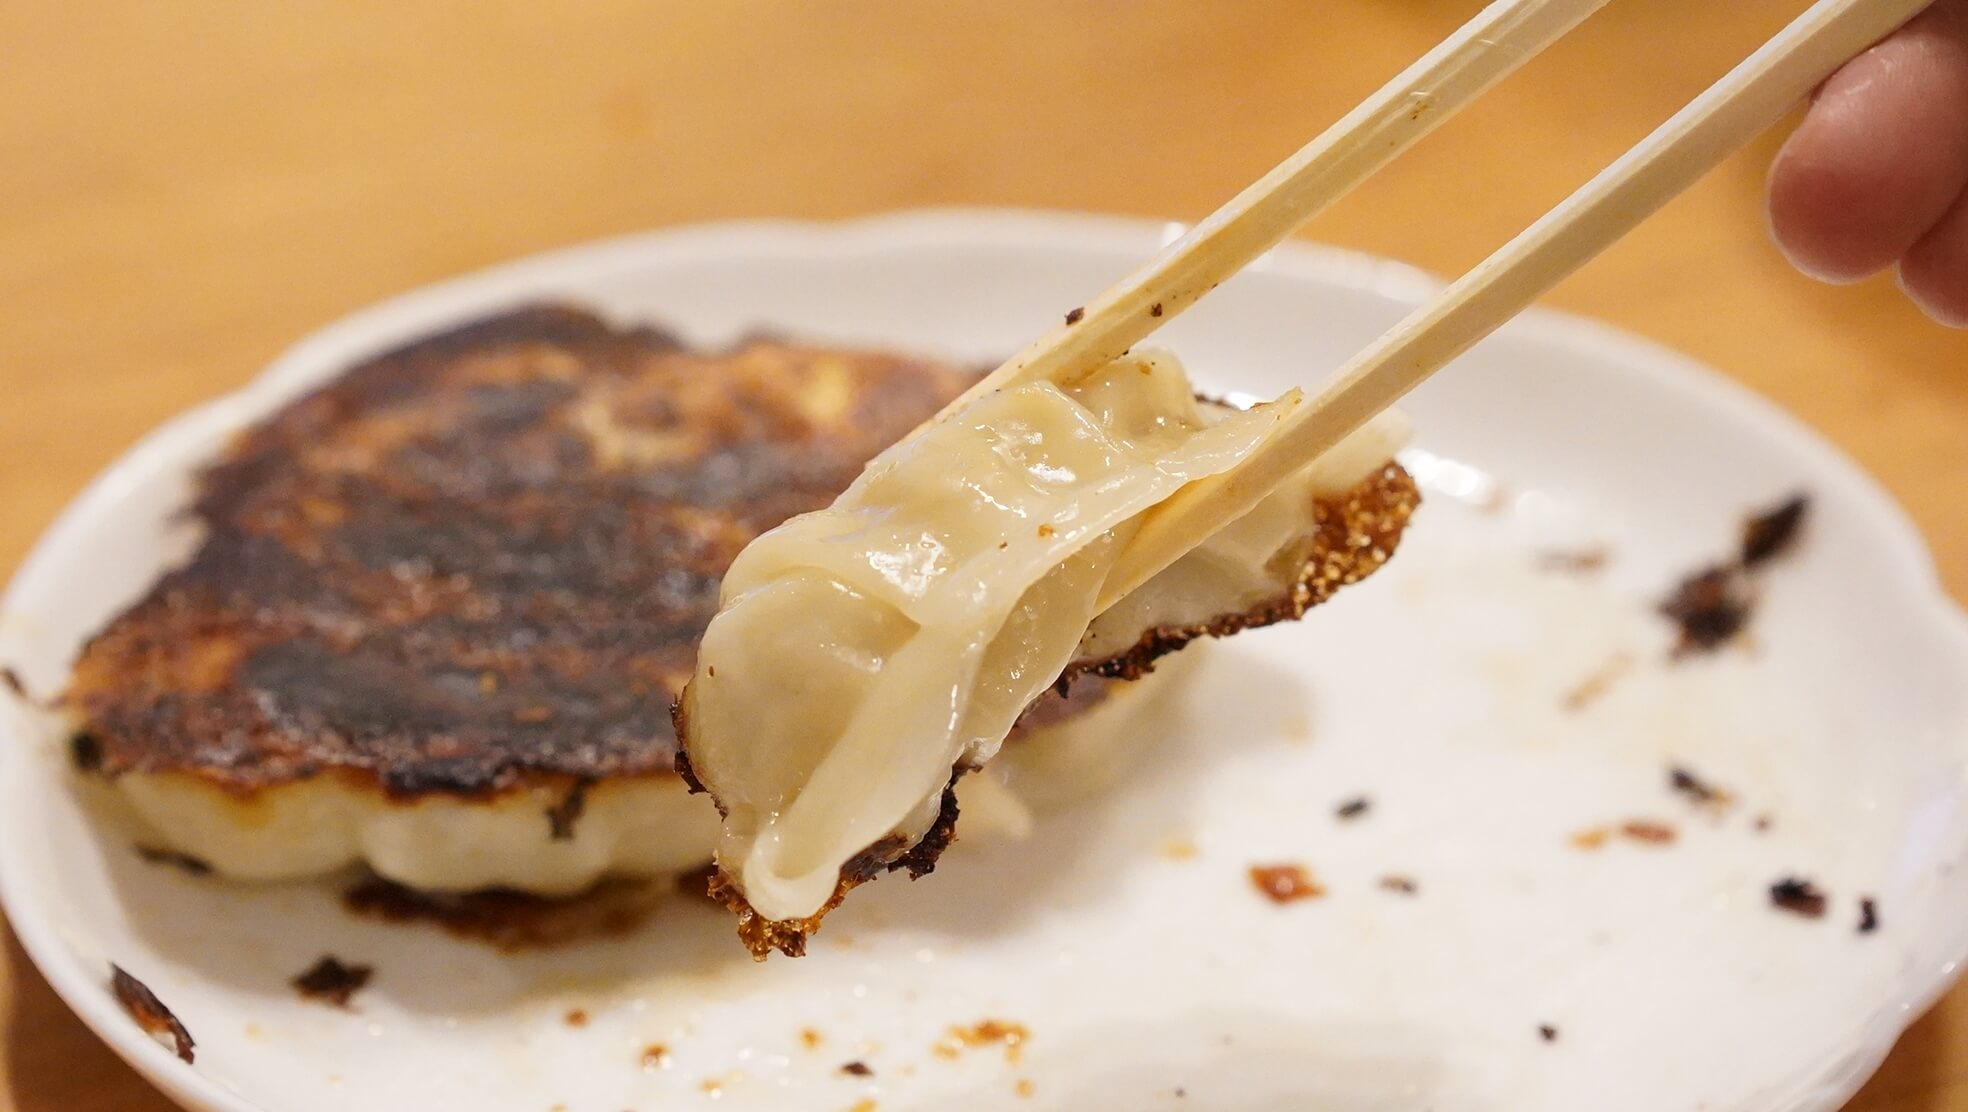 味の素の冷凍食品「生姜好きのためのギョーザ」を箸でつまんでいる写真